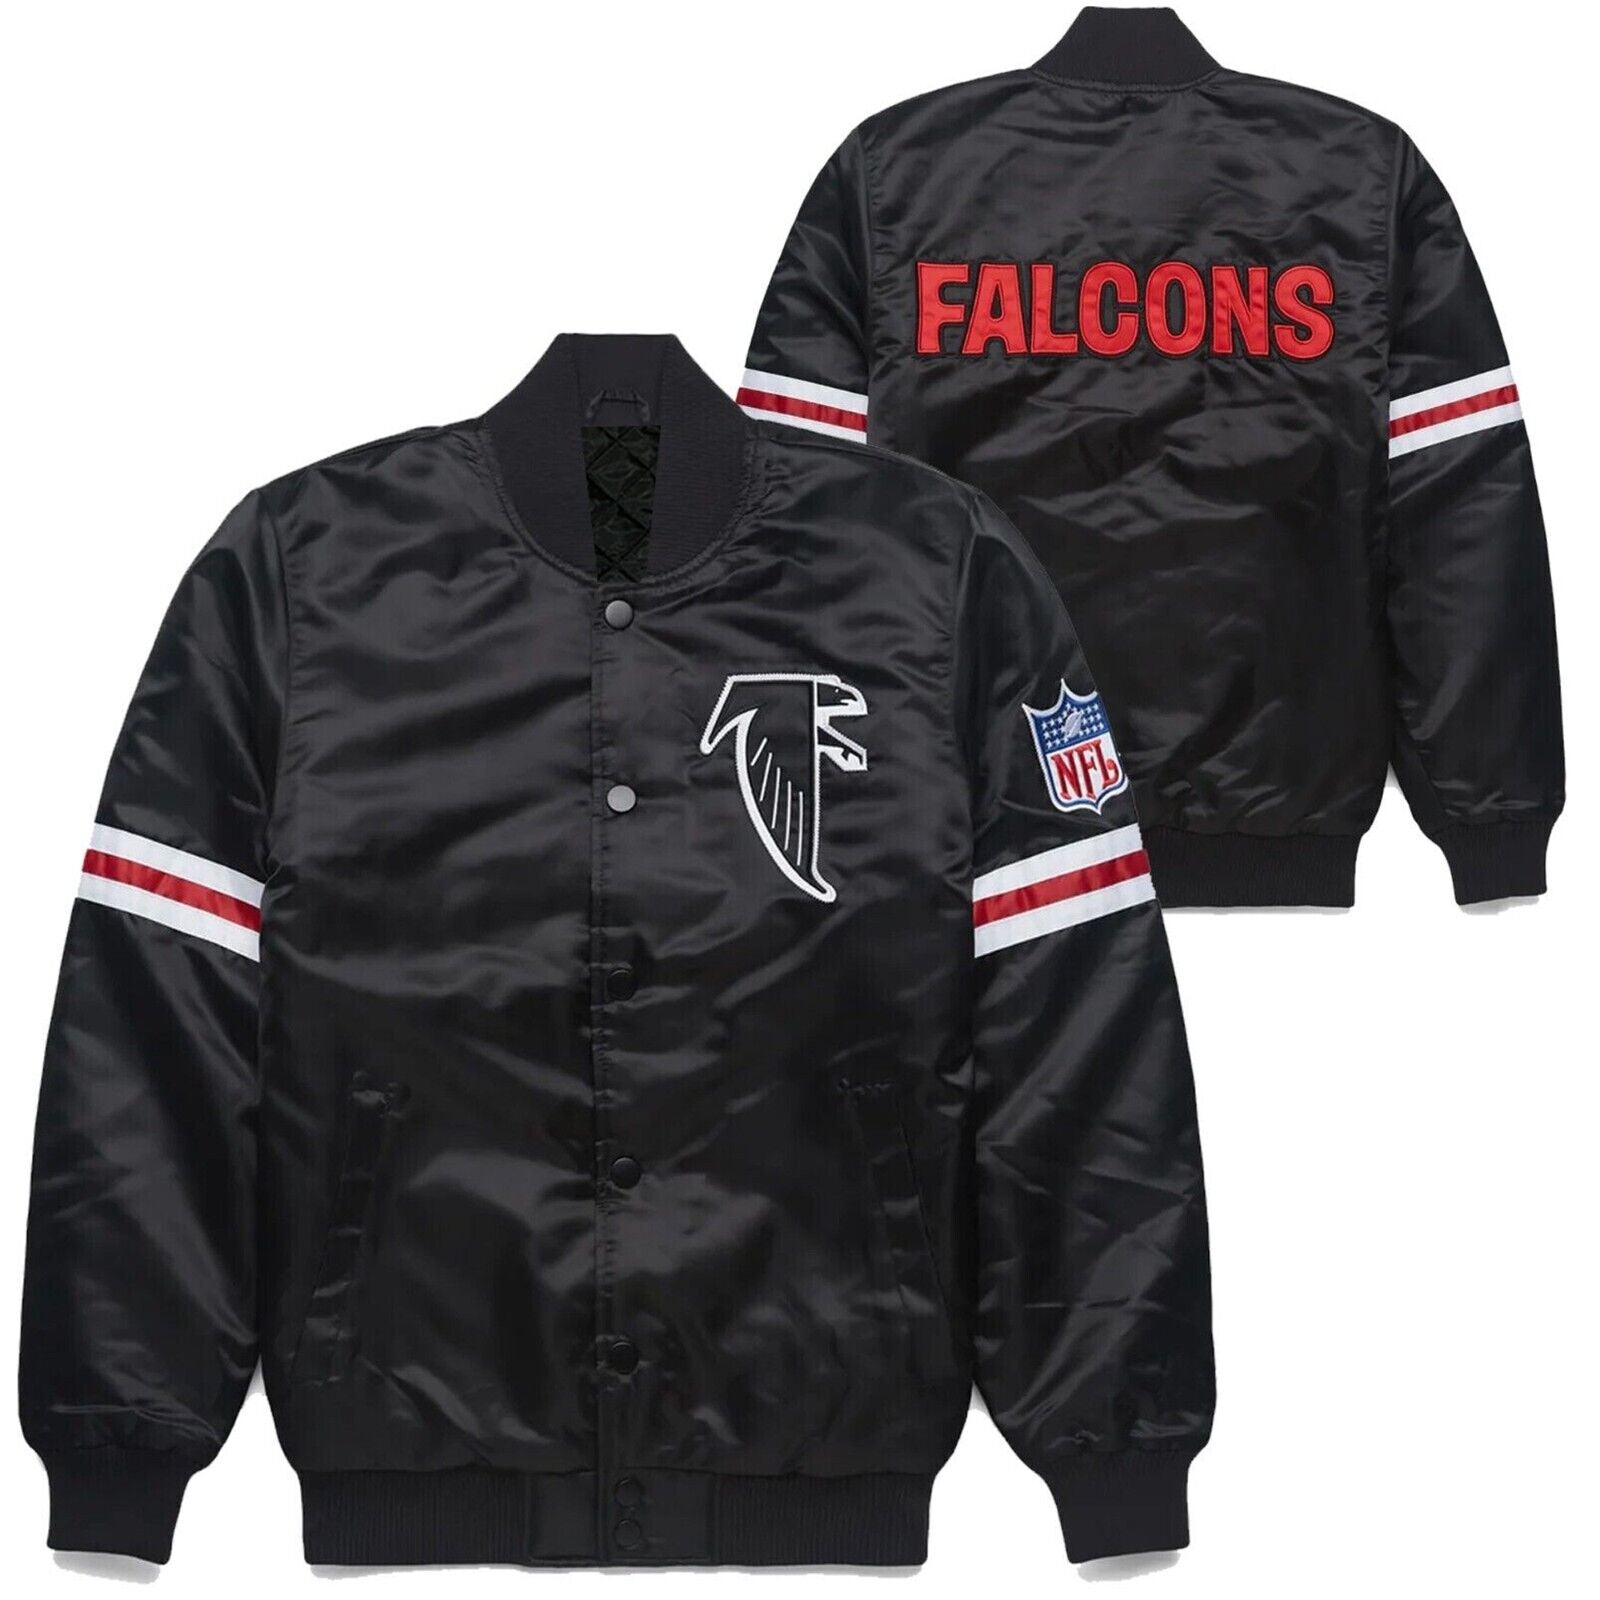 NFL Atlanta Falcons 80s Black Satin Bomber Style Varsity Jacket